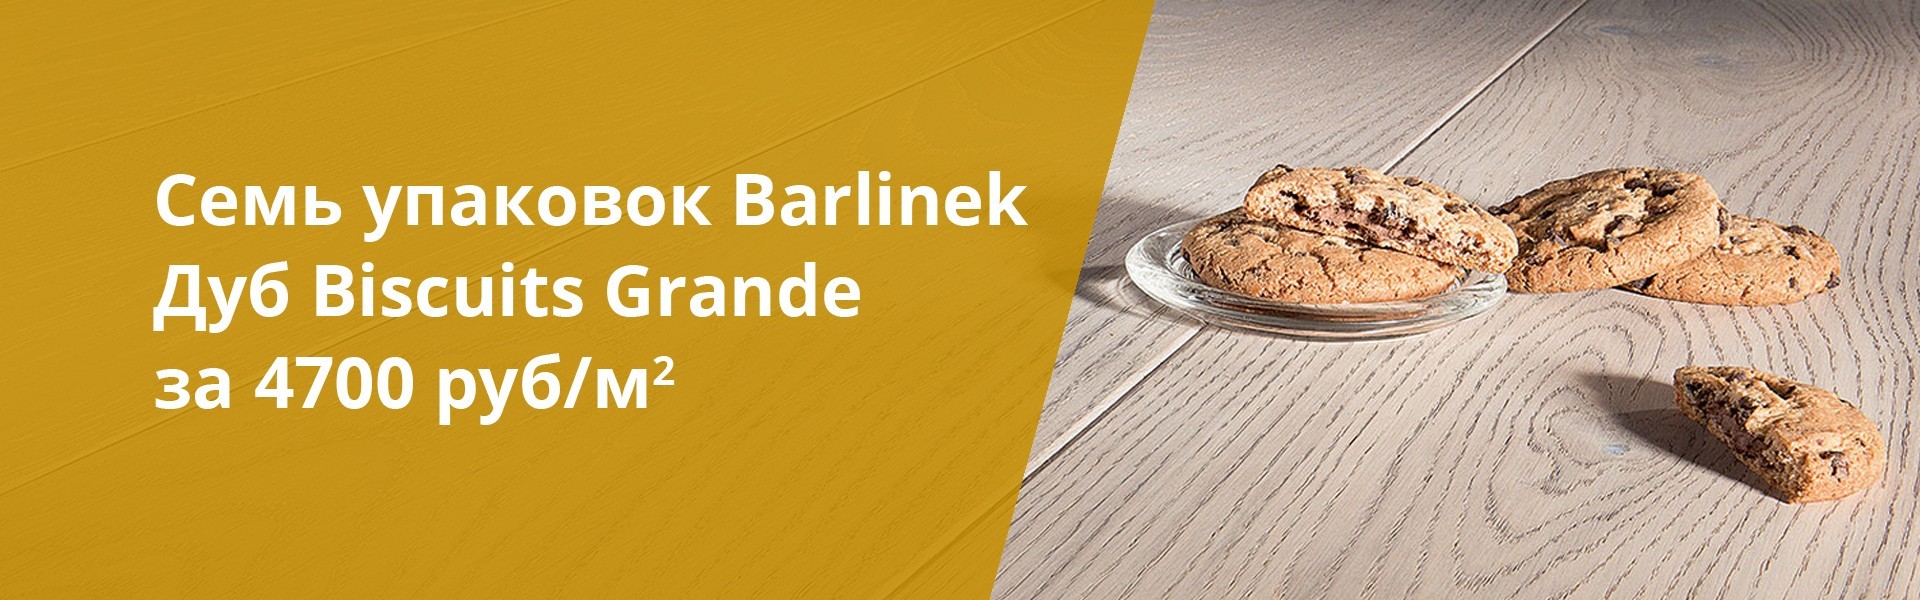 Акция на паркет Barlinek Дуб Biscuits Grande